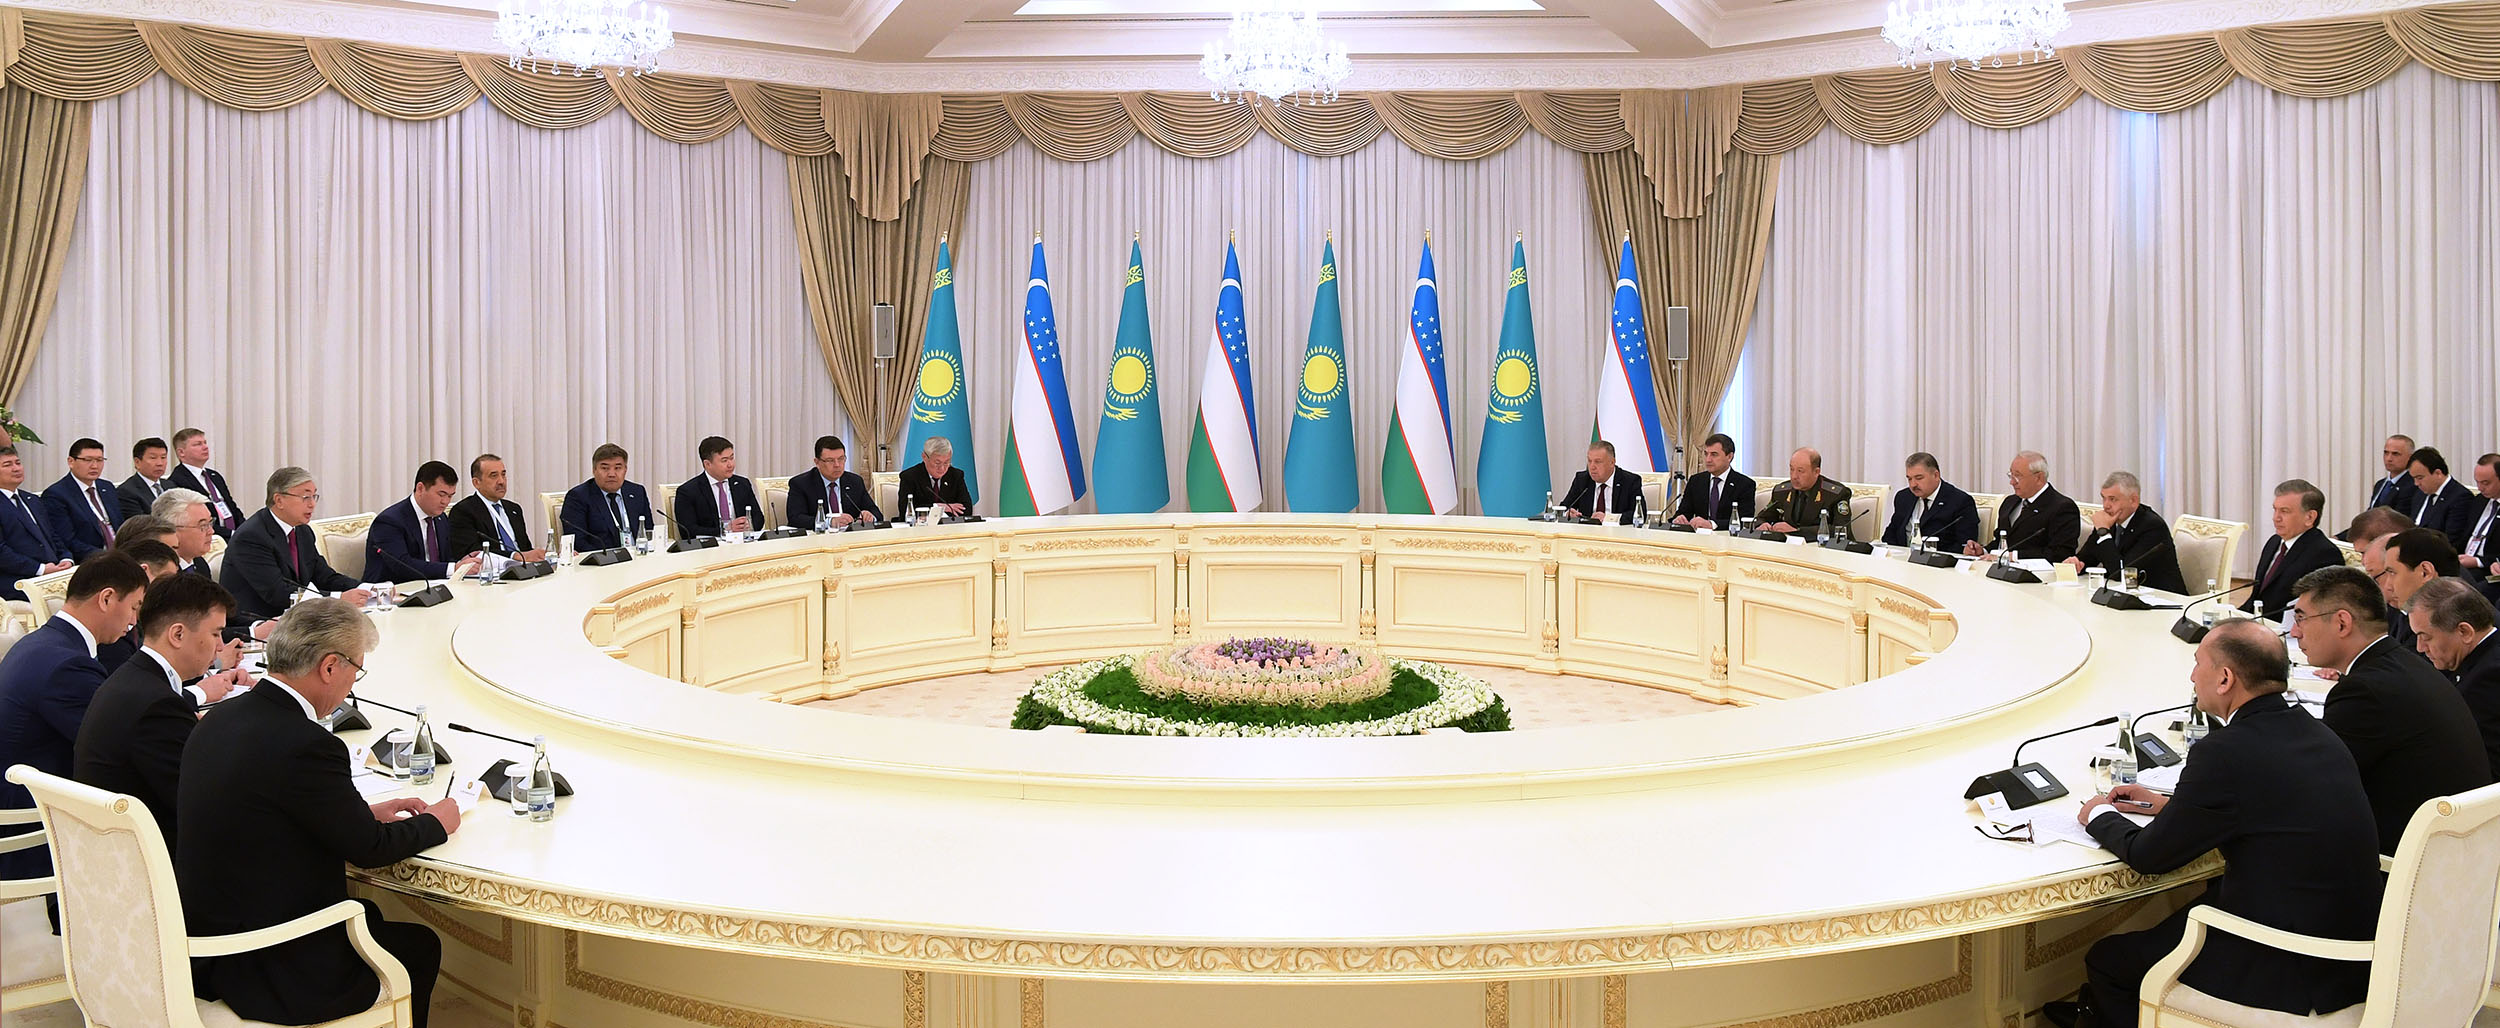 Глава государства встретился с Президентом Узбекистана в расширенном составе